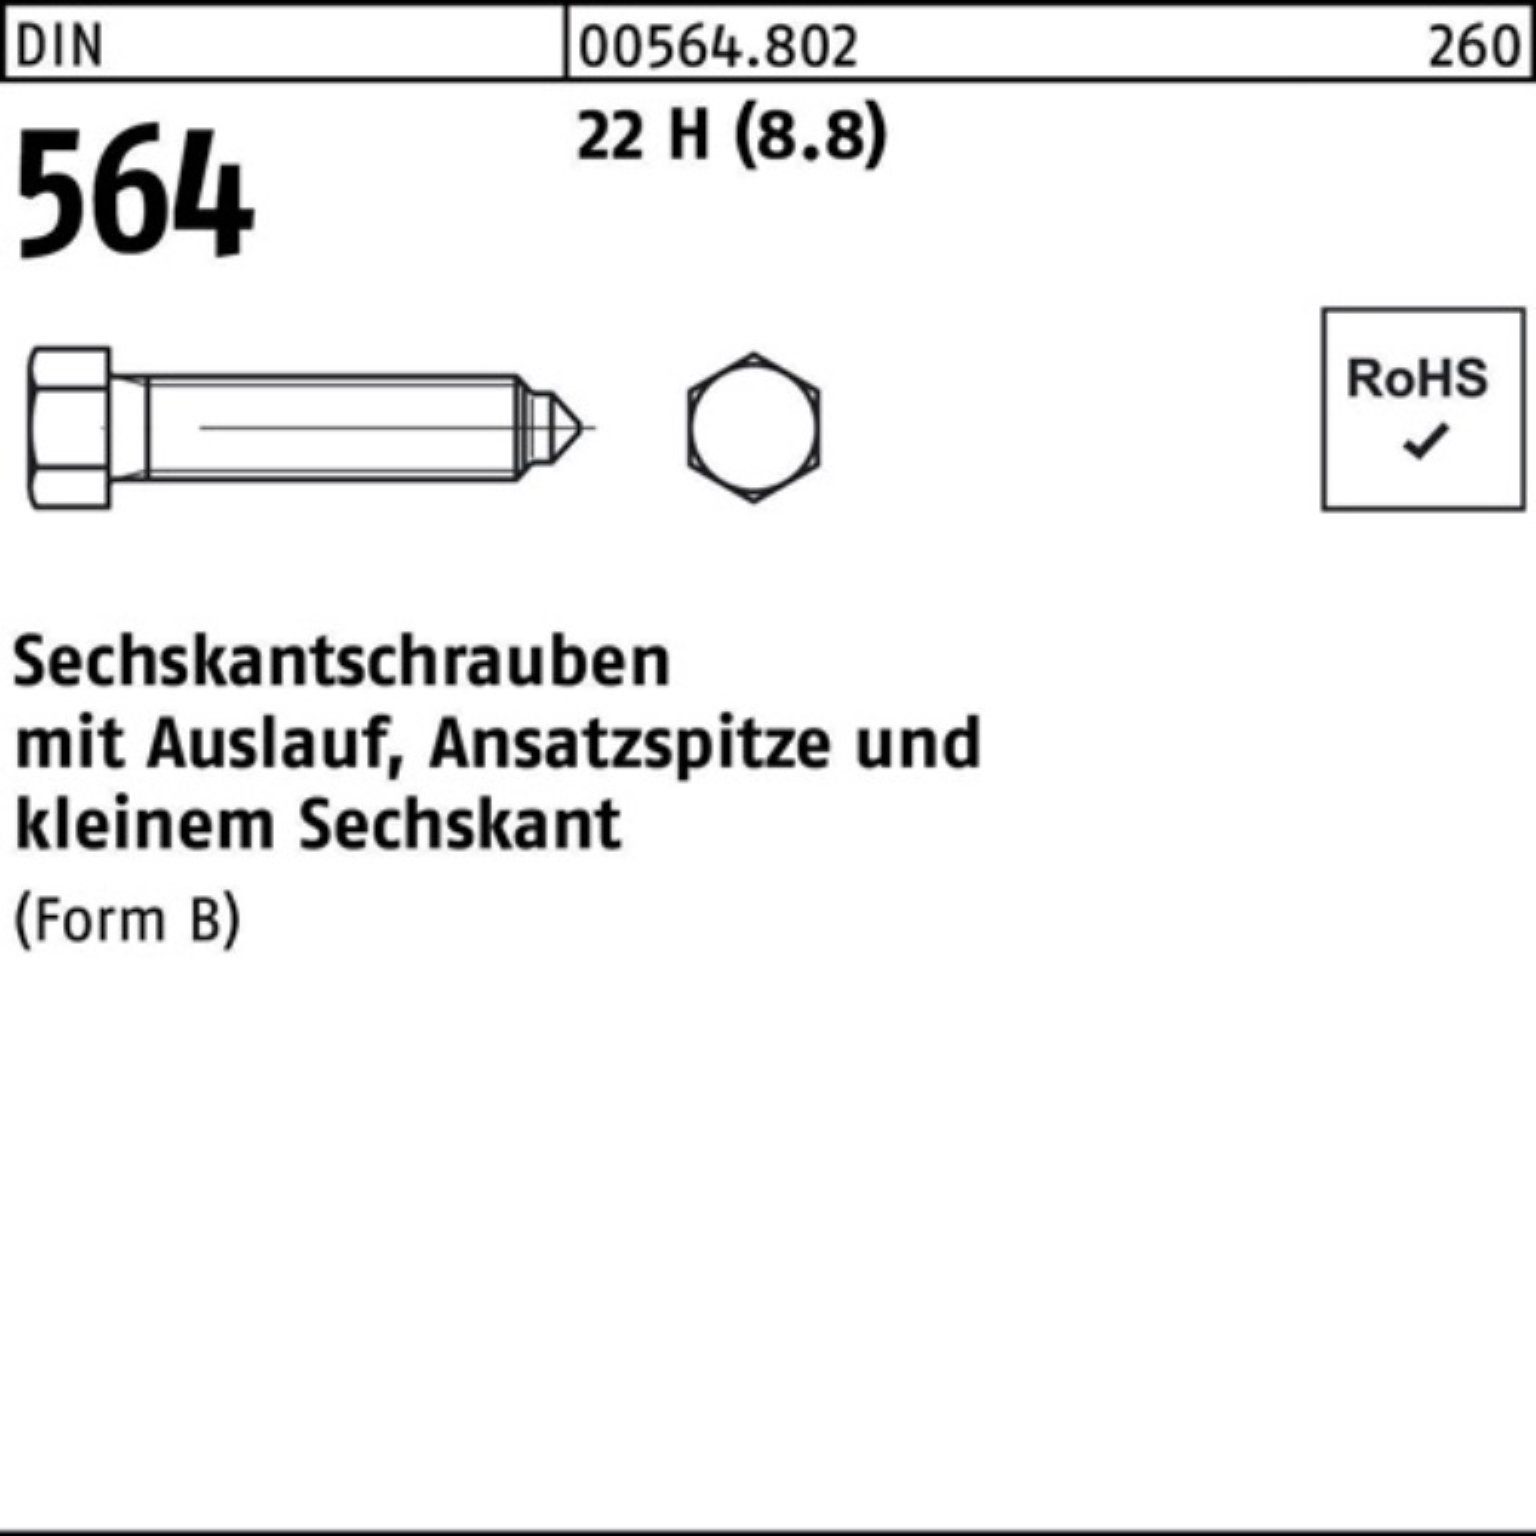 Reyher Sechskantschraube 100er Pack Sechskantschraube DIN 564 Ansatzspitze/Auslauf BM 10x 40 22